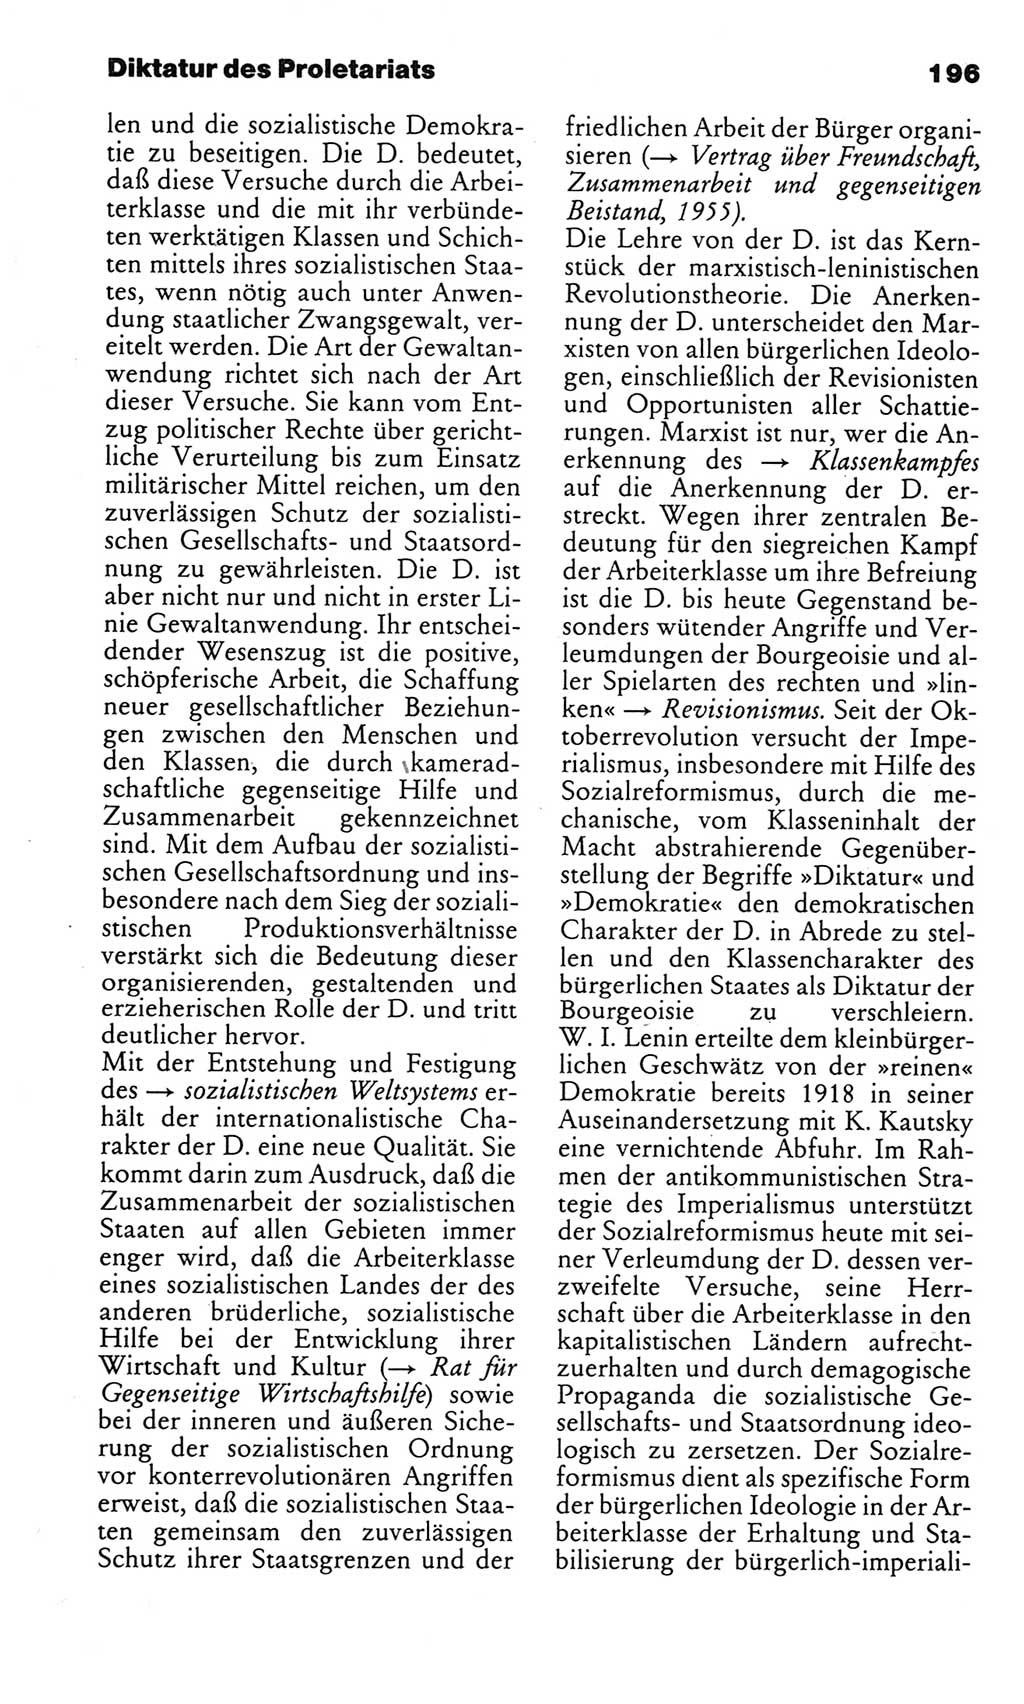 Kleines politisches Wörterbuch [Deutsche Demokratische Republik (DDR)] 1985, Seite 196 (Kl. pol. Wb. DDR 1985, S. 196)